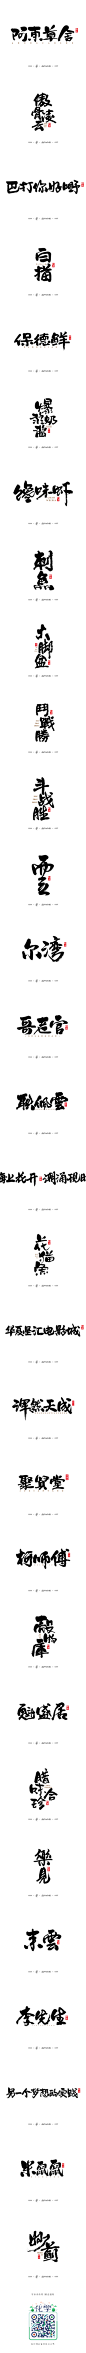 商业書法字体30例-字体传奇网-中国首个字体品牌设计师交流网,商业書法字体30例-字体传奇网-中国首个字体品牌设计师交流网